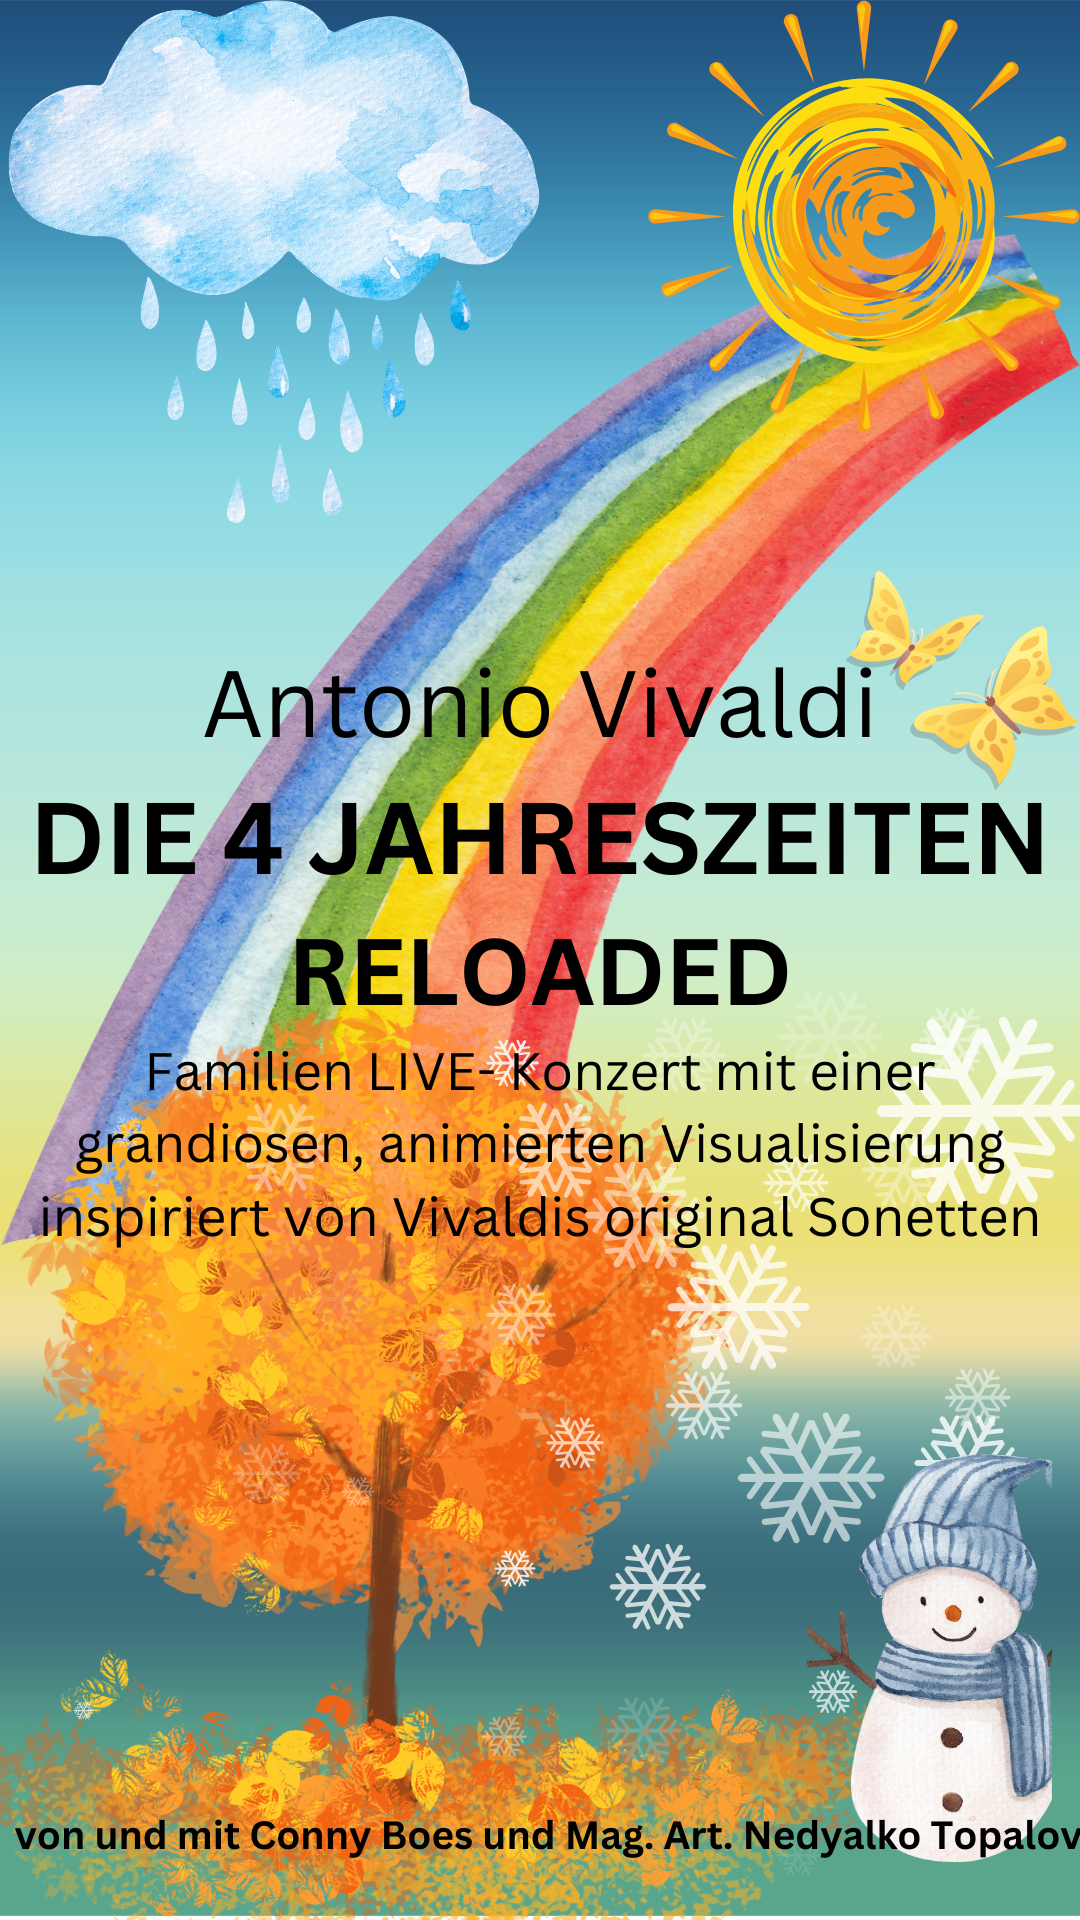 Vivaldi Rockstar "Die vier Jahreszeiten" RELOADED